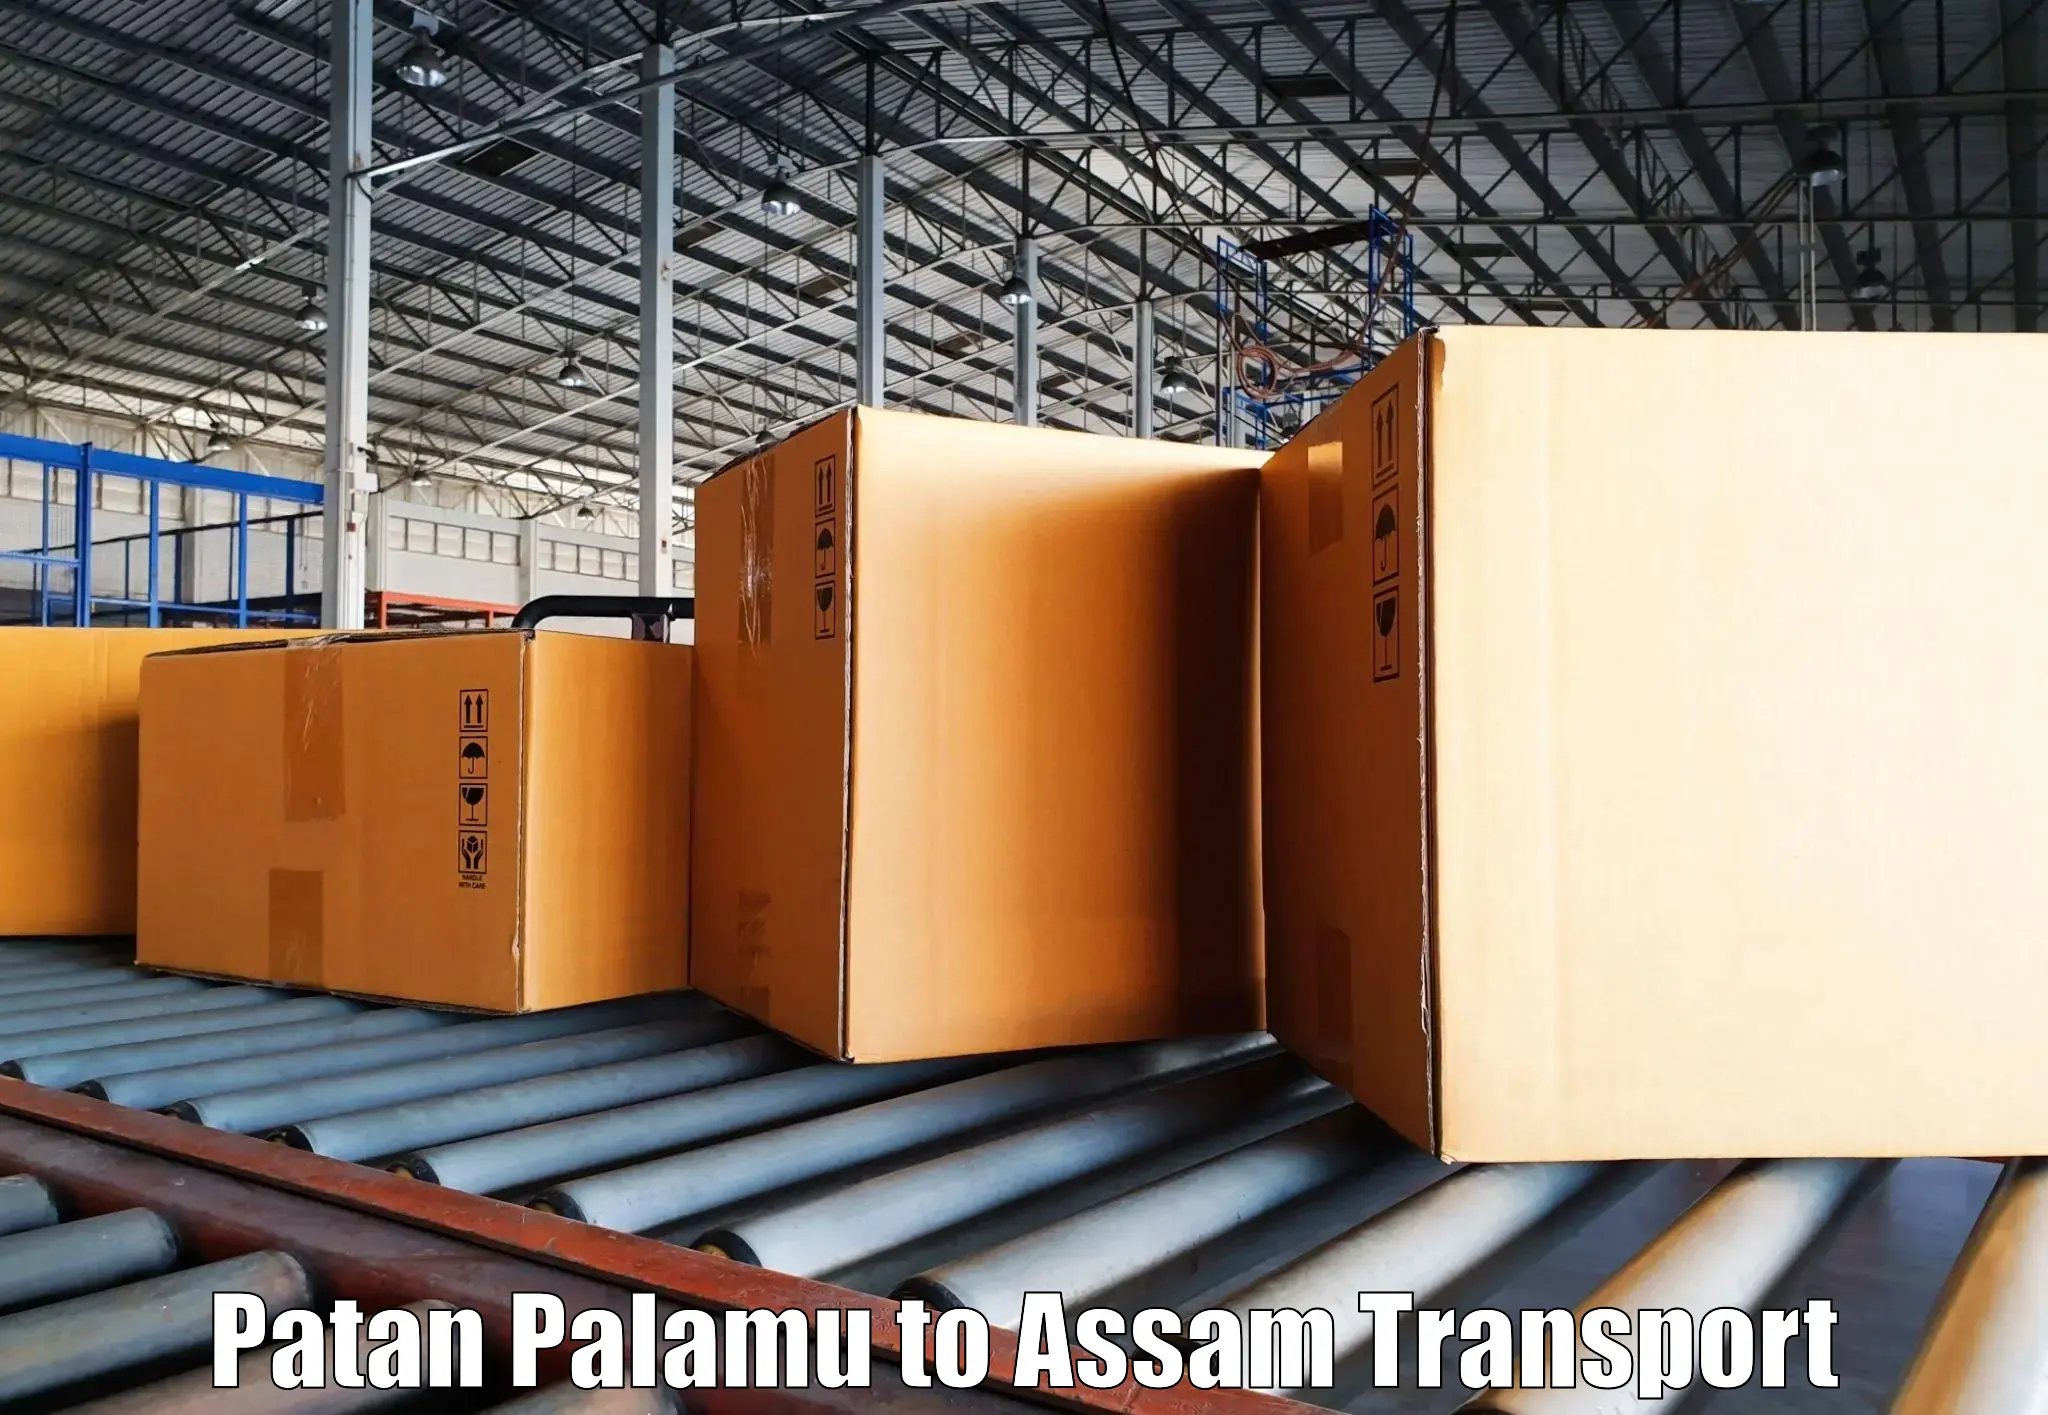 Air freight transport services Patan Palamu to Jamugurihat